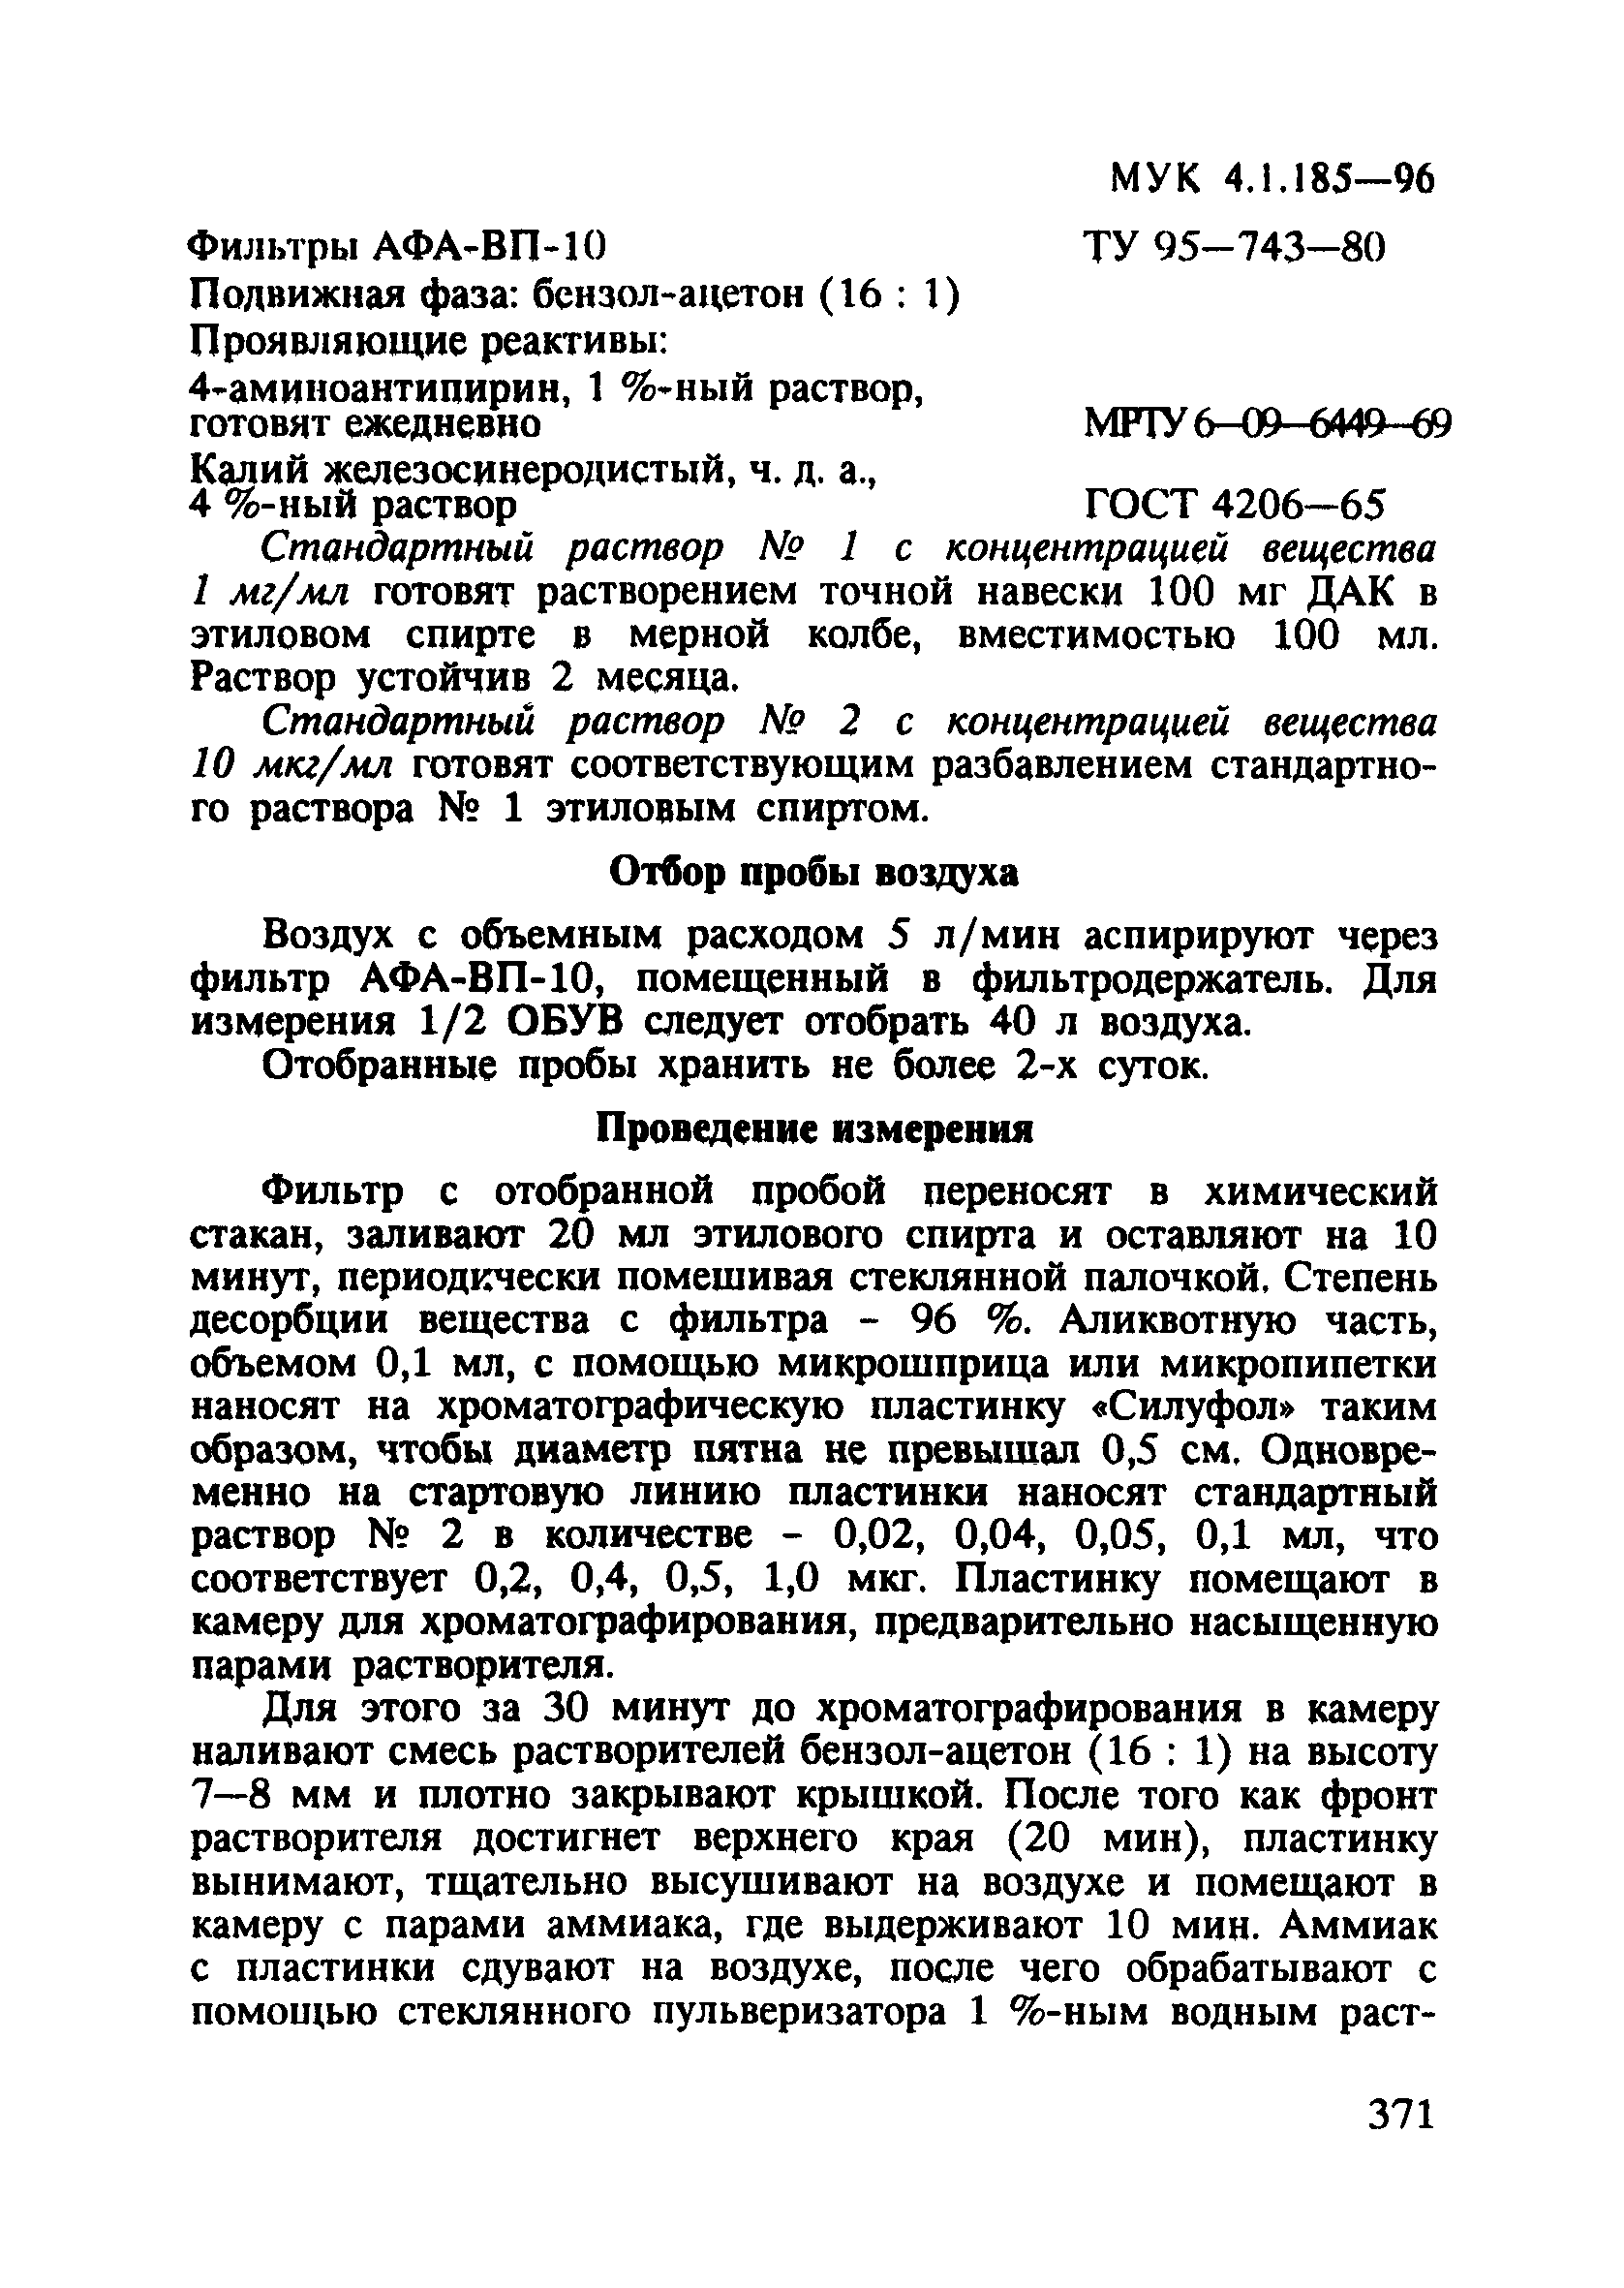 МУК 4.1.185-96